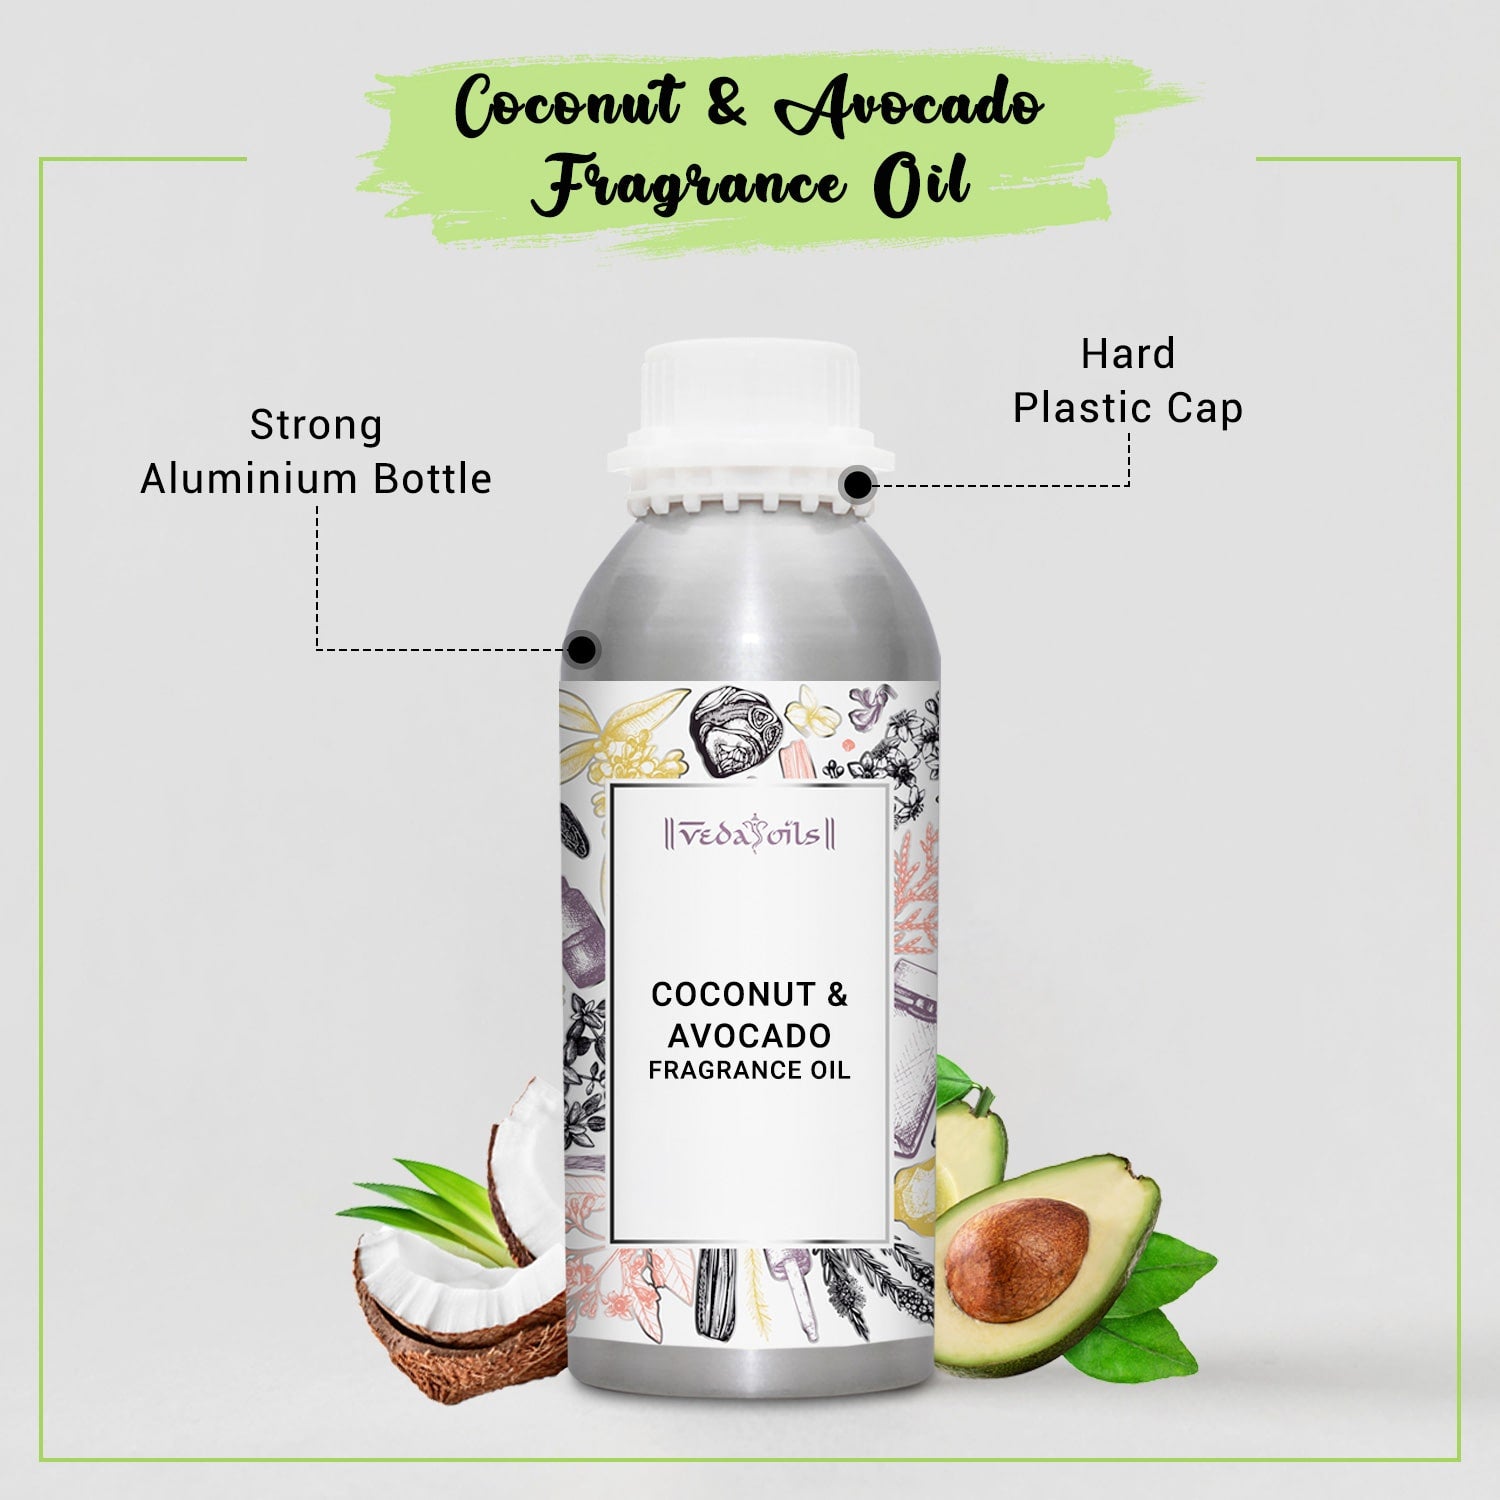 Coconut & Avocado Fragrance Oil